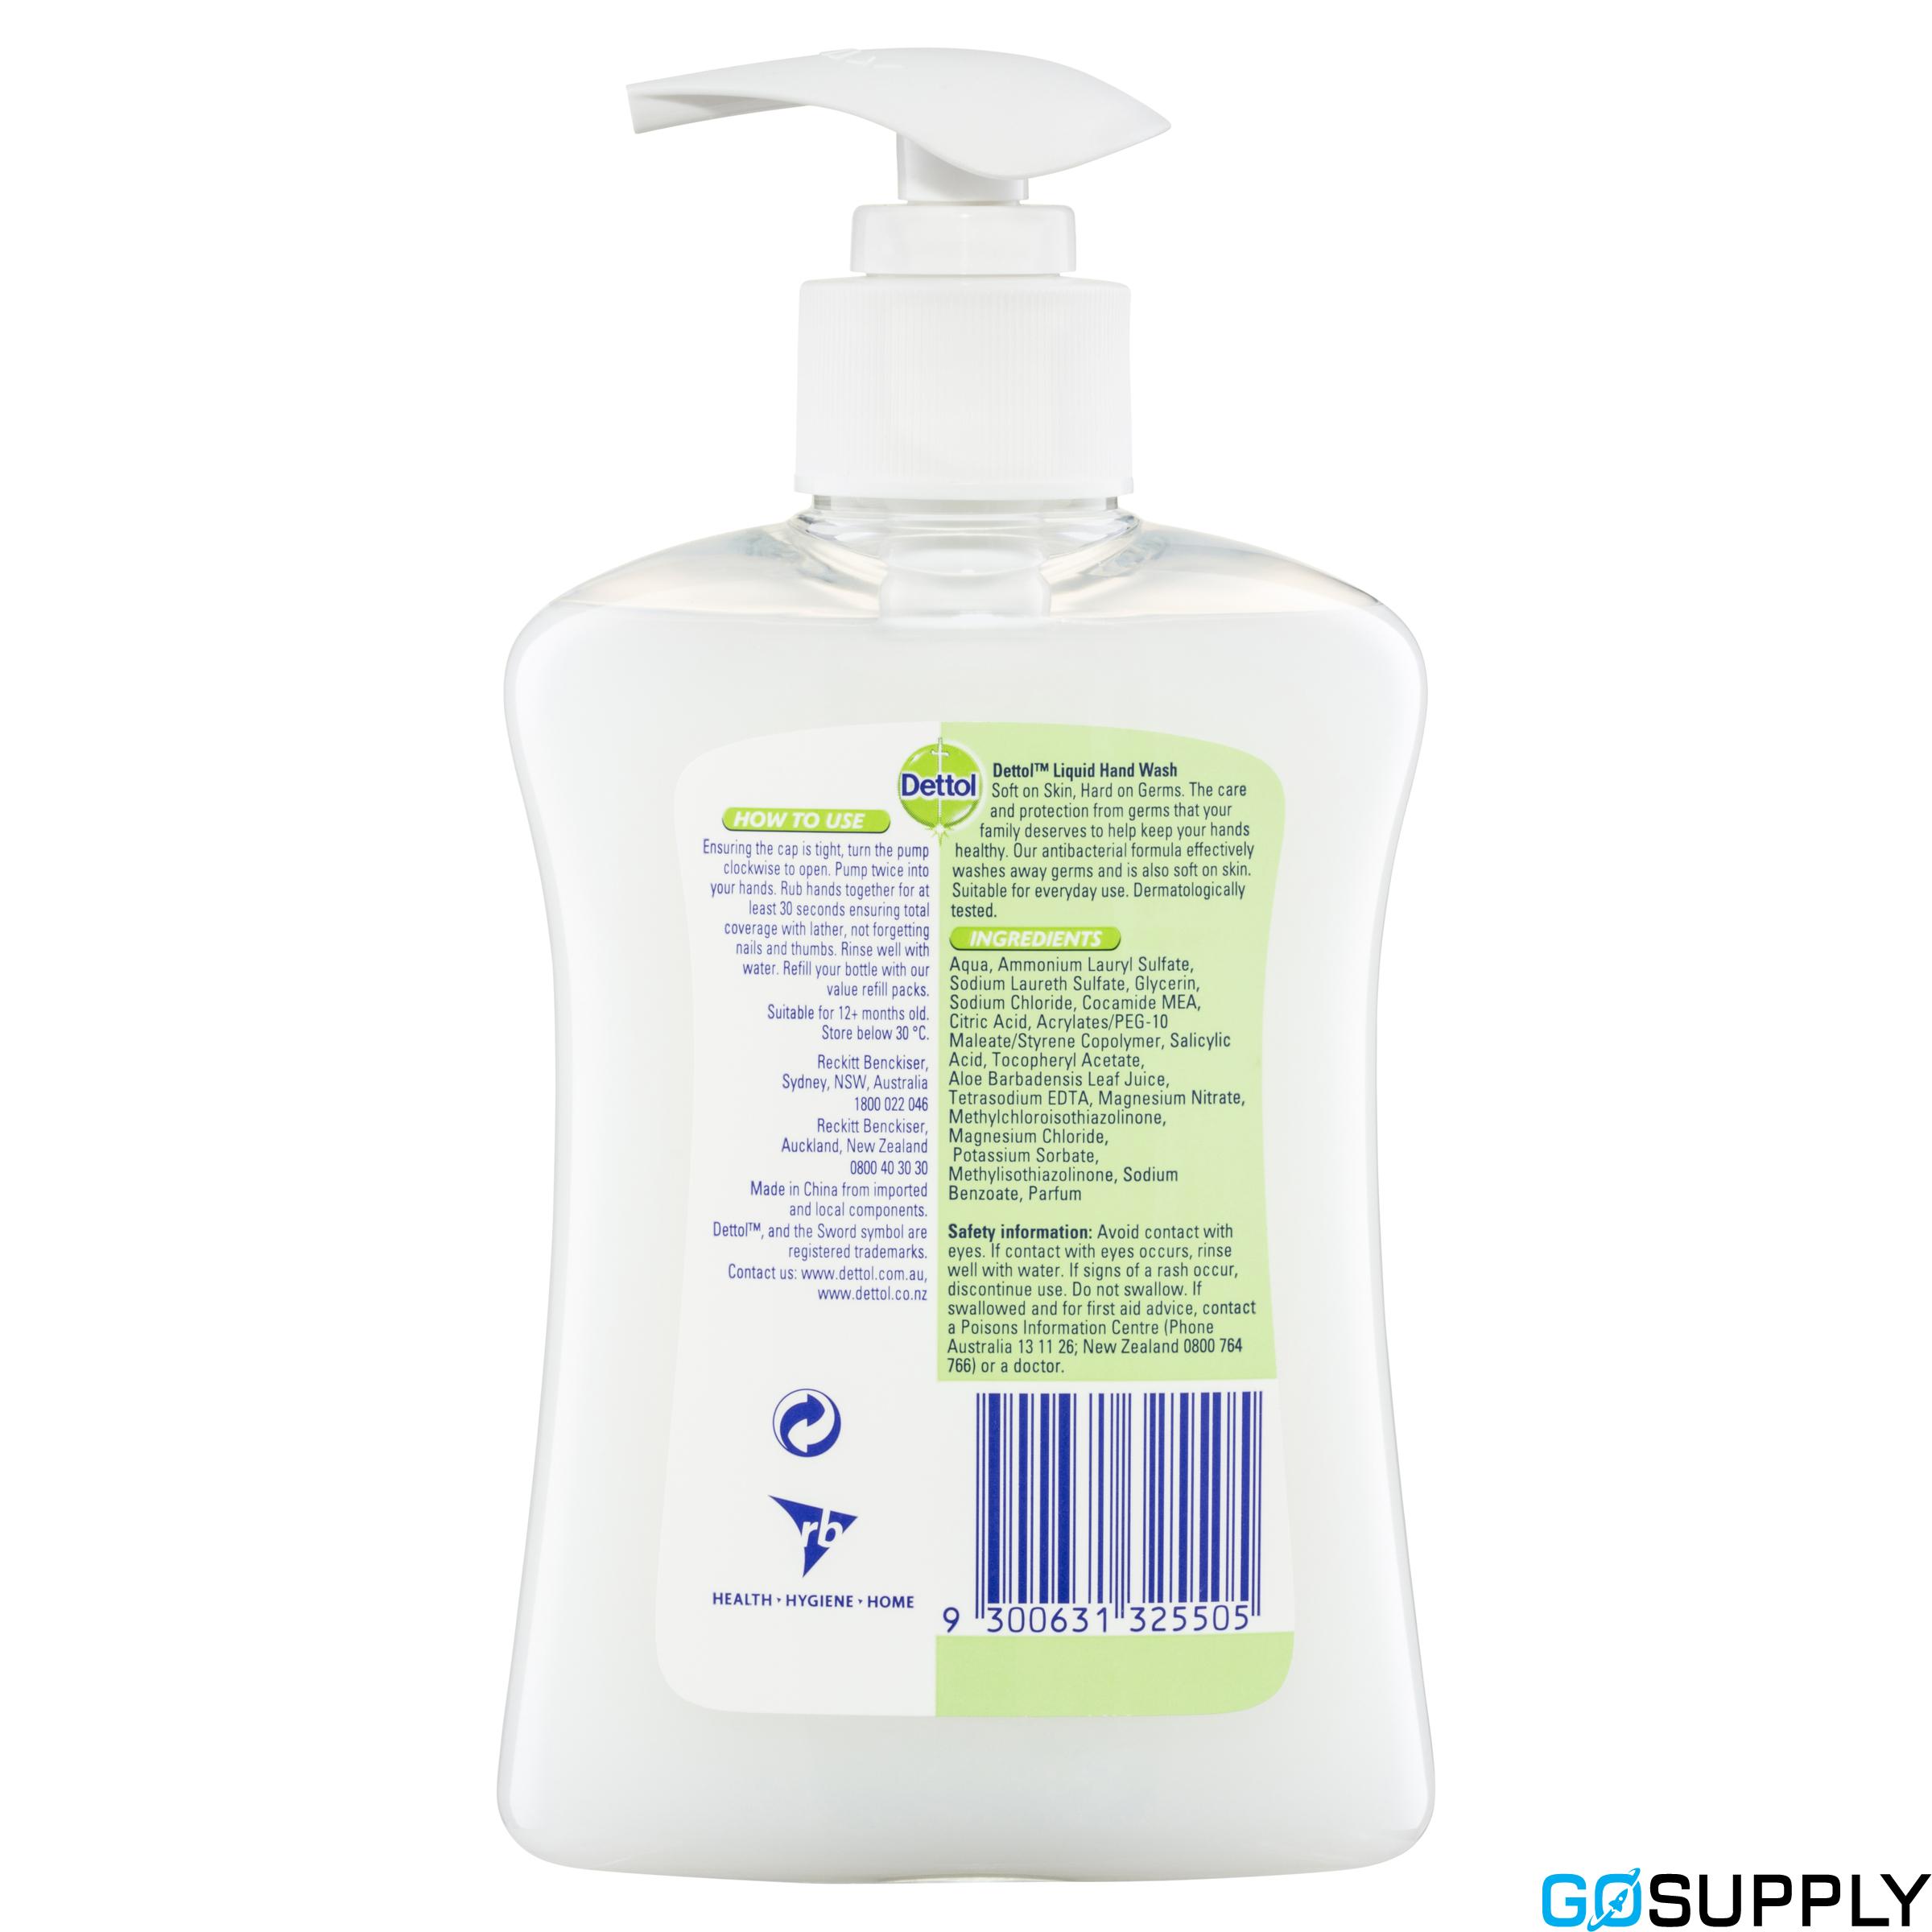 Dettol Antibacterial Liquid Hand Wash Pump Aloe Vera and Vitamin E 250mL